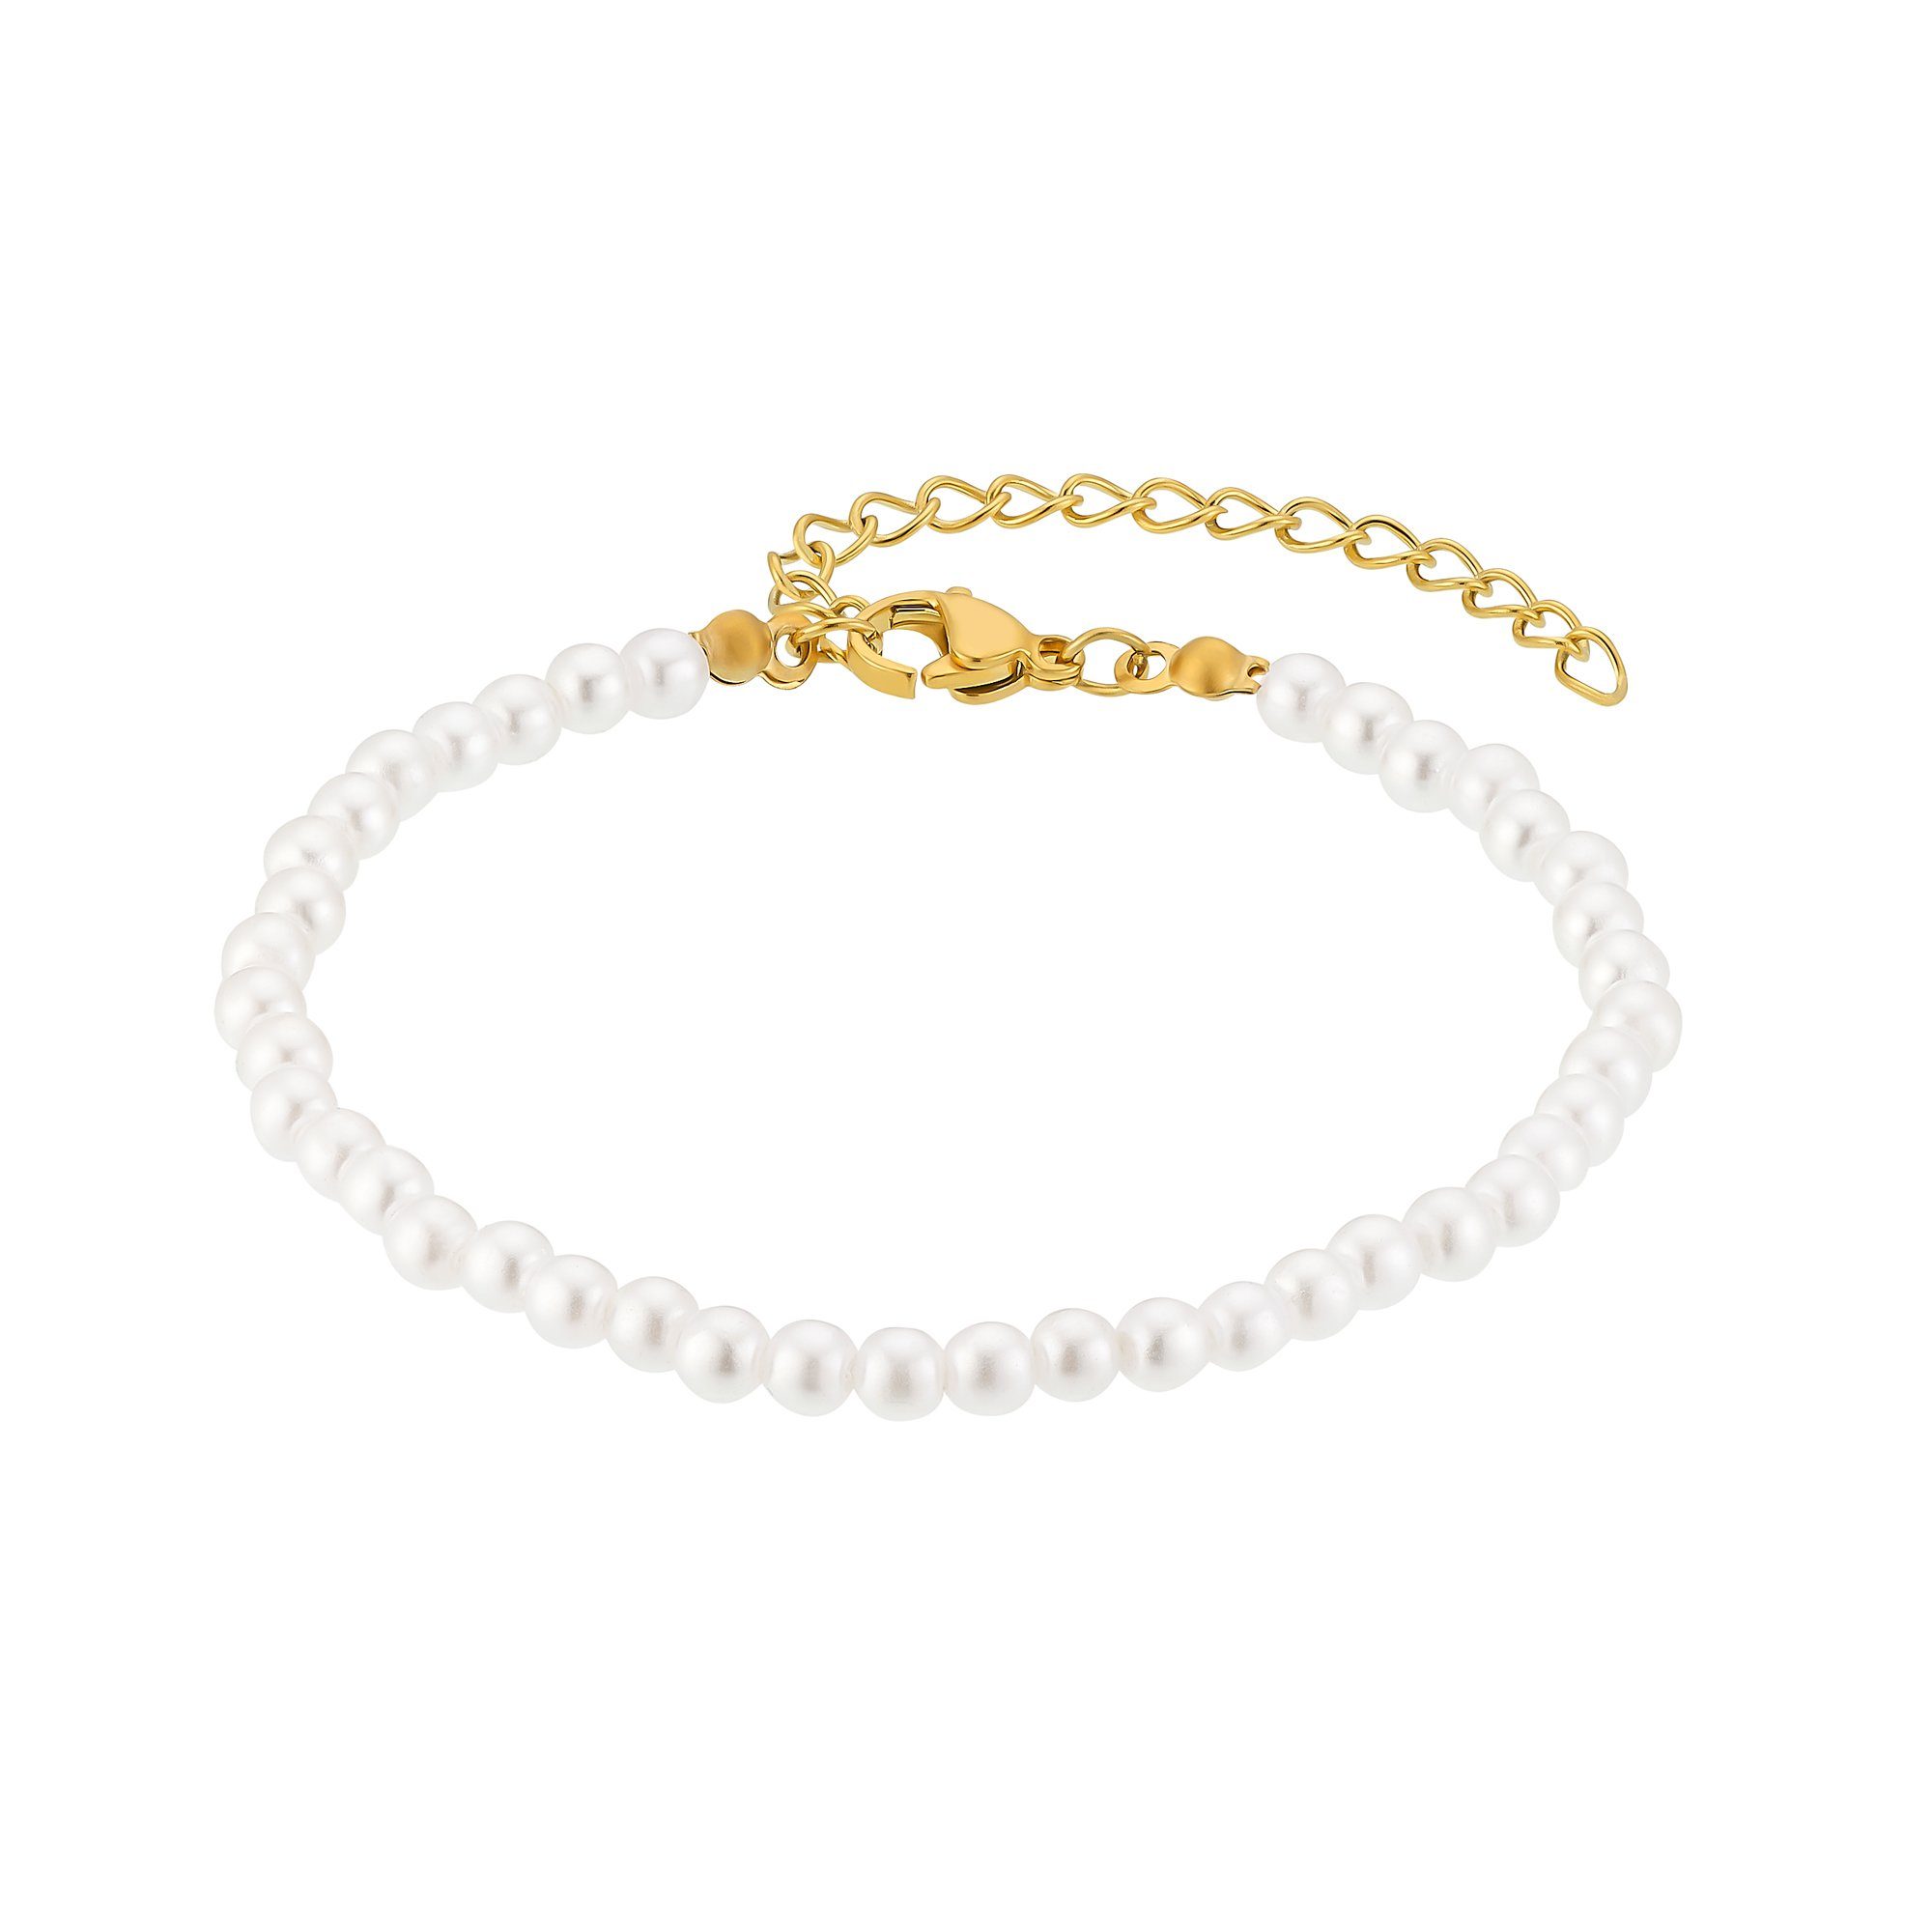 Heideman Armband Juliane silberfarben poliert (Armband, inkl. Geschenkverpackung), Perlenarmband Frauen goldfarben